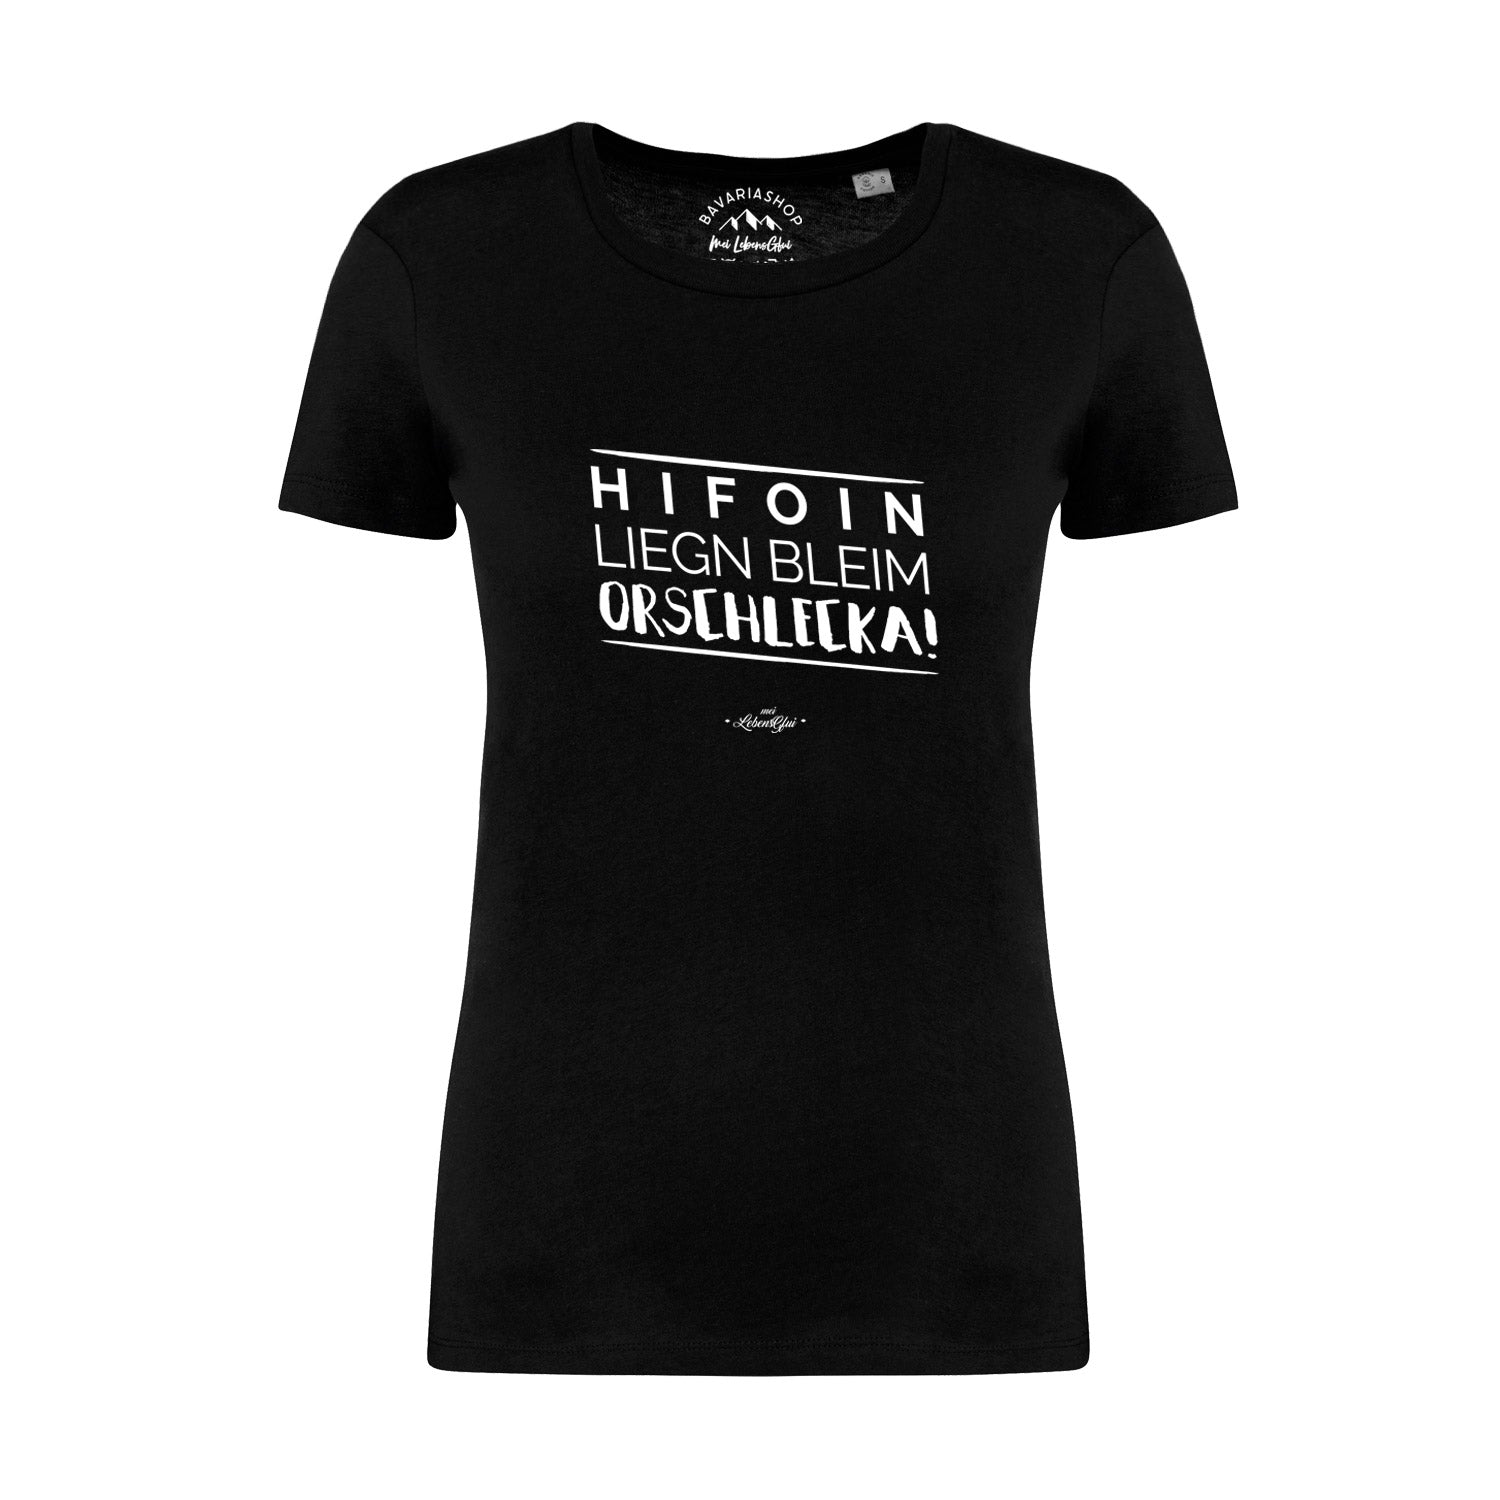 Damen T-Shirt "Hifoin liegn bleim..."